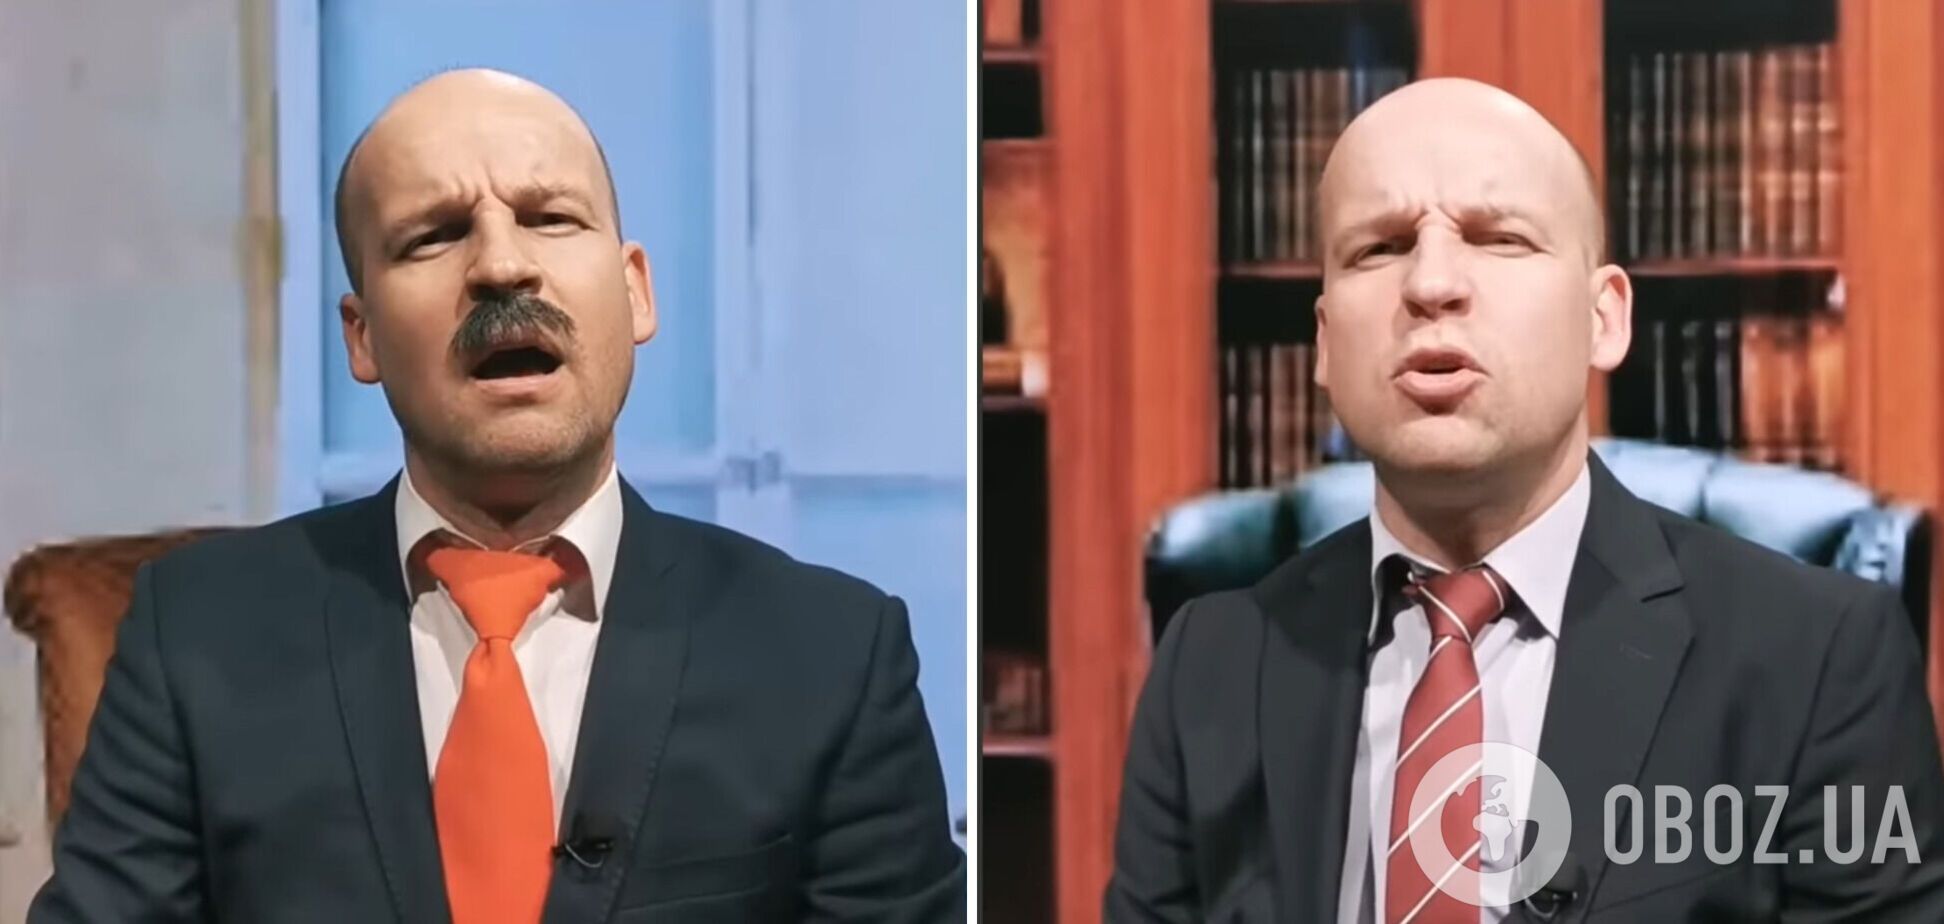 Звезда 'Квартала 95' высмеял Лукашенко, который поздравлял Путина с аннексией украинских территорий и путевкой в Гаагу